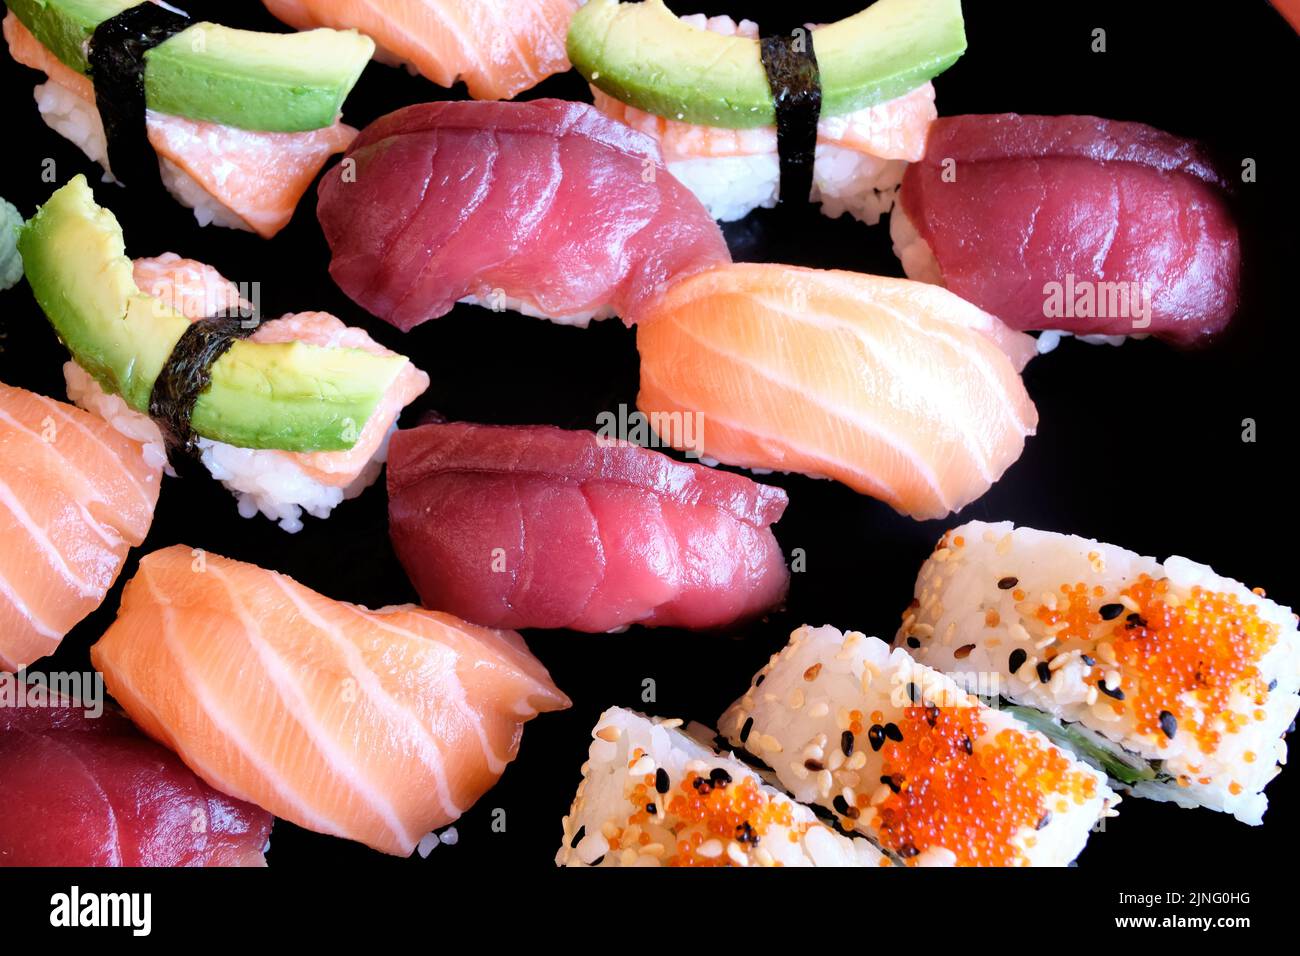 Sushi japonais. Maki et petits pains au thon, au saumon, aux crevettes, au crabe et à l'avocat. Vue de dessus de l'assortiment de sushis. Rouleau de sushis arc-en-ciel, uramaki, hosoma Banque D'Images